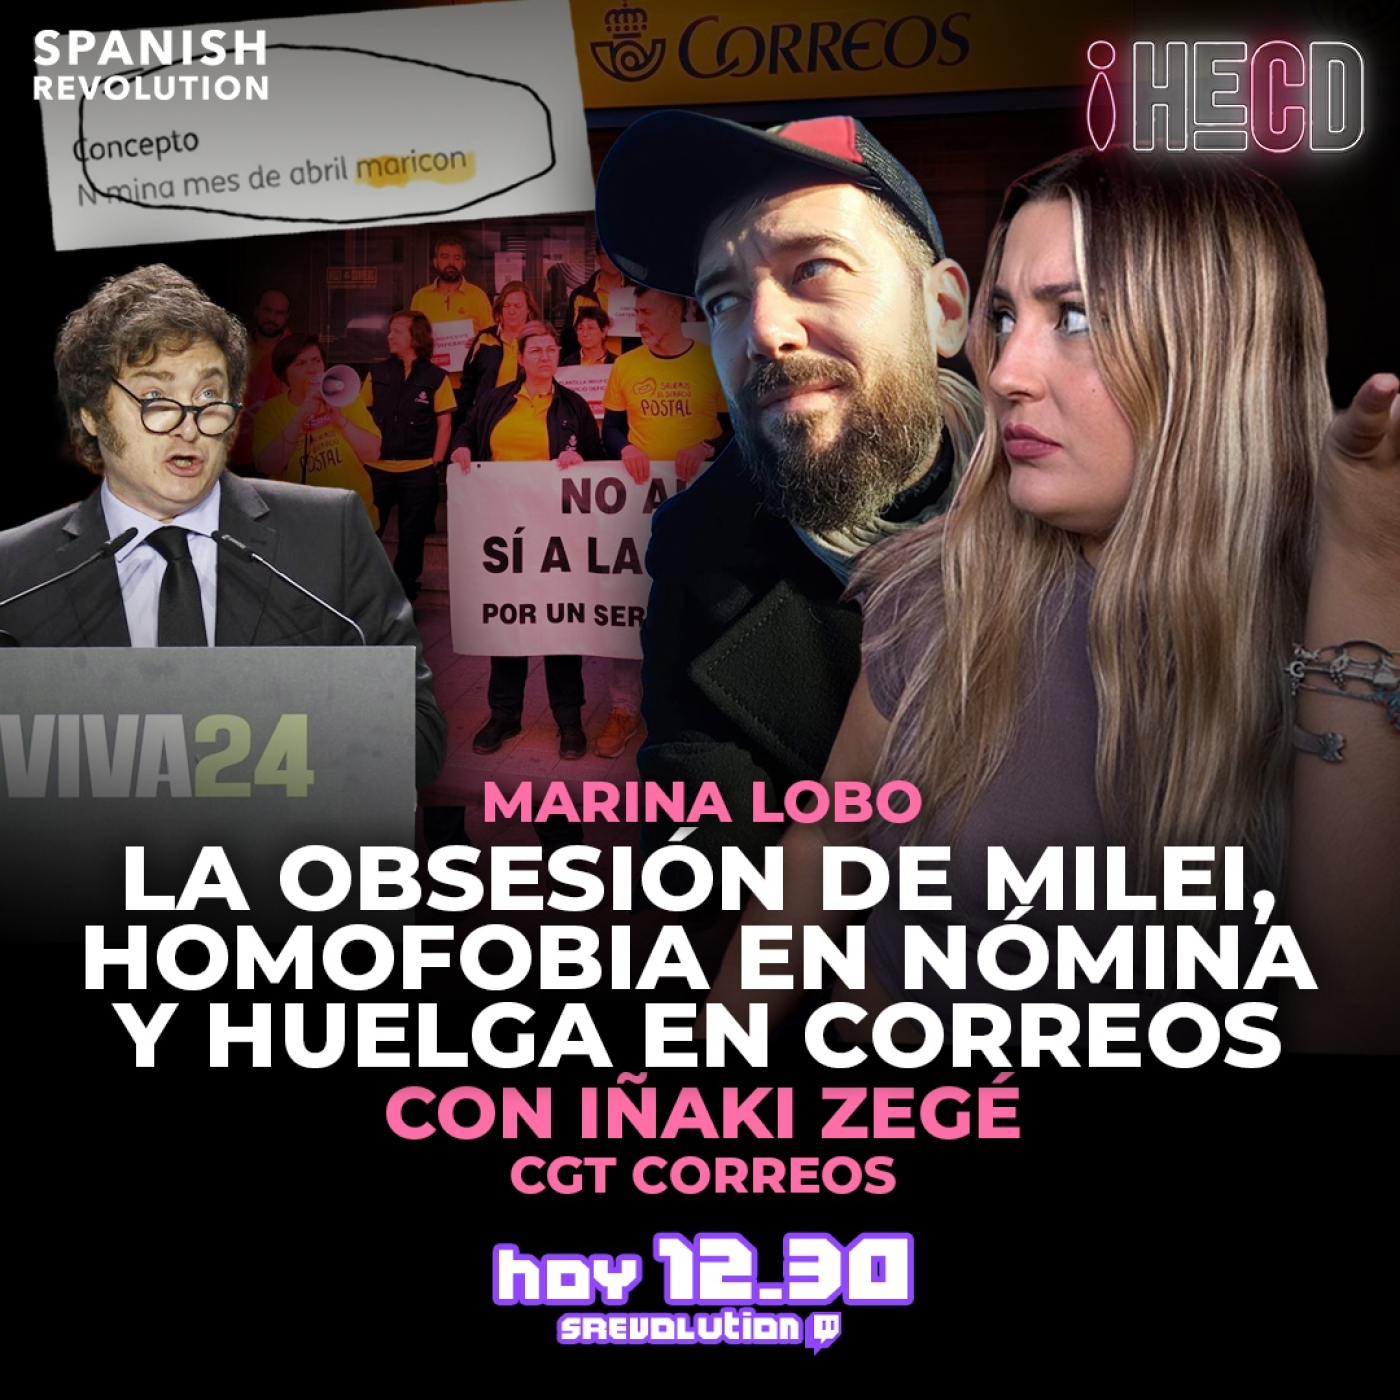 HECD! 421 Marina Lobo - Milei+ huelga en Correos+ Ley de “abolición” de la prostitución+Ione Belarra